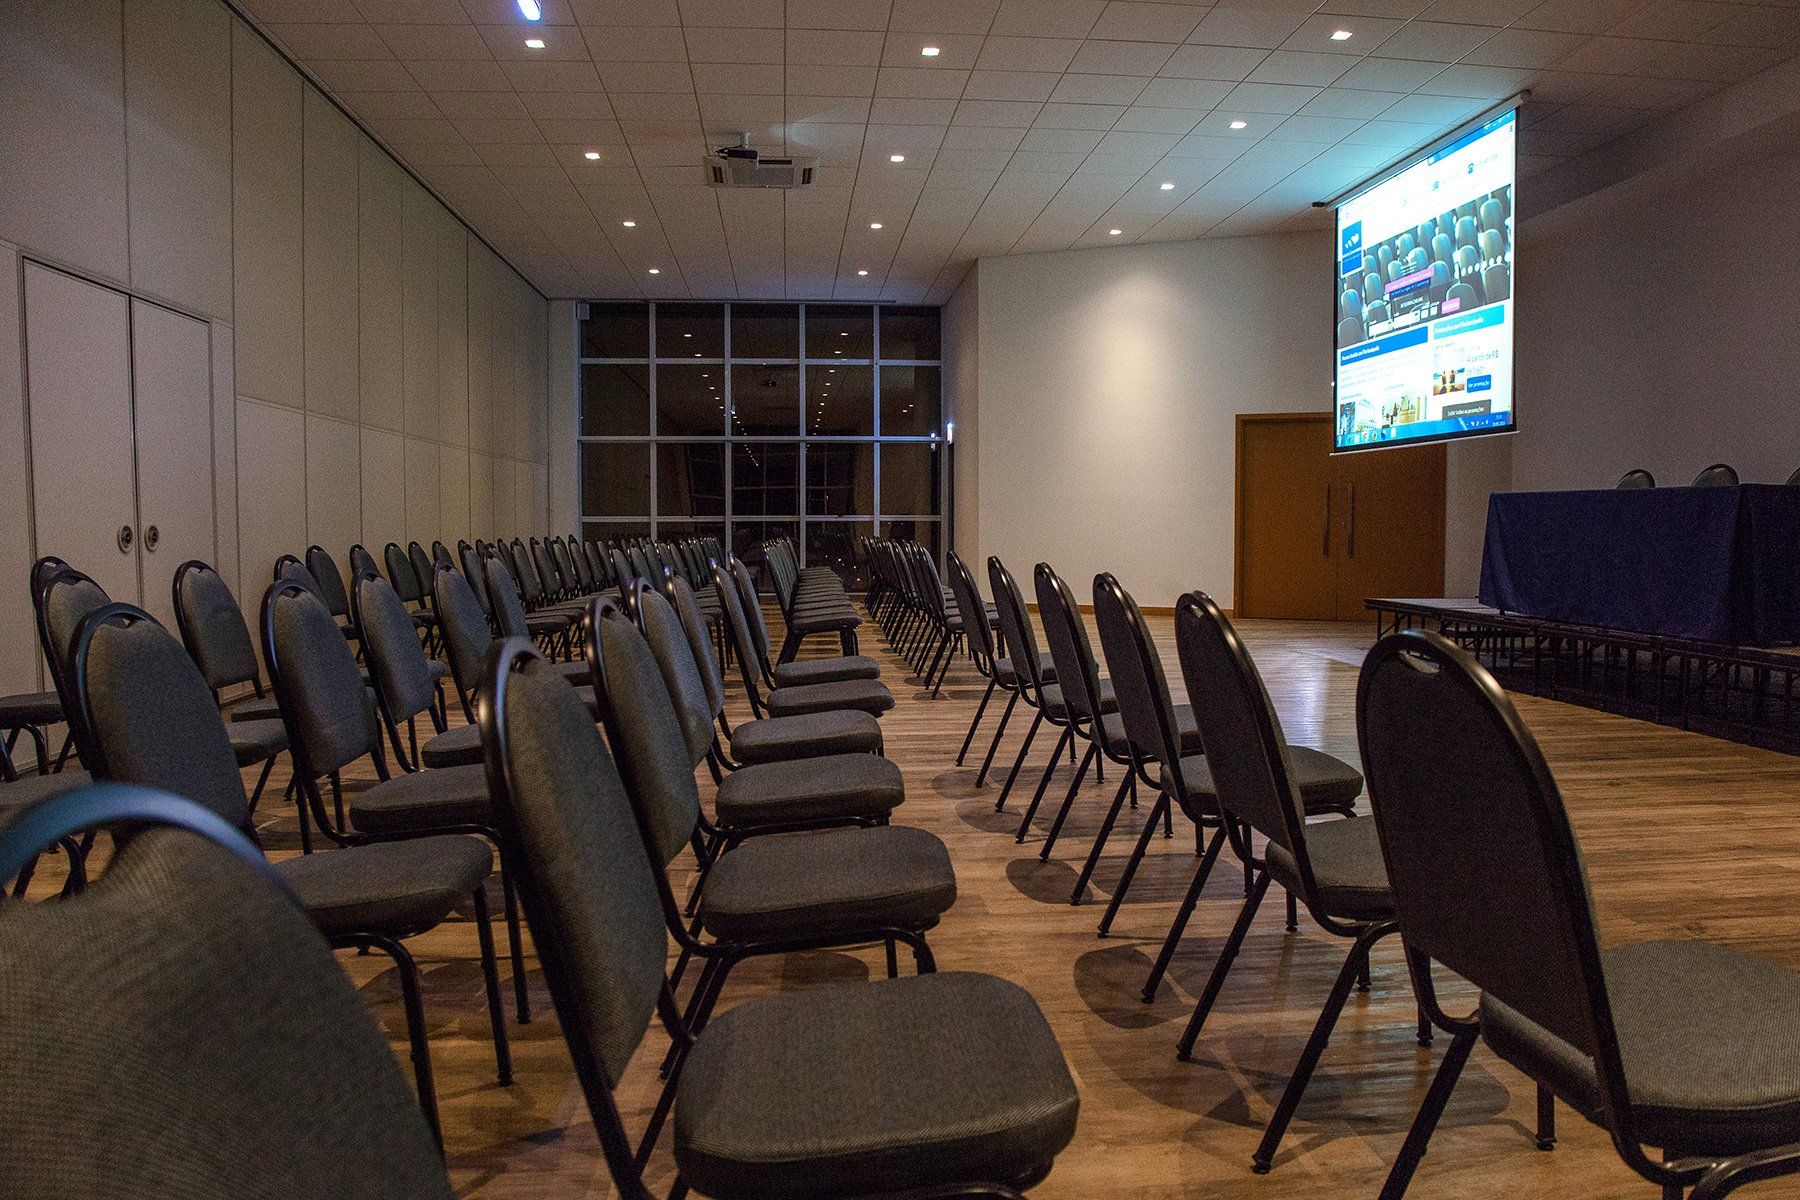 Fileiras de cadeiras estão alinhadas em uma sala de conferências com uma grande tela pendurada no teto.